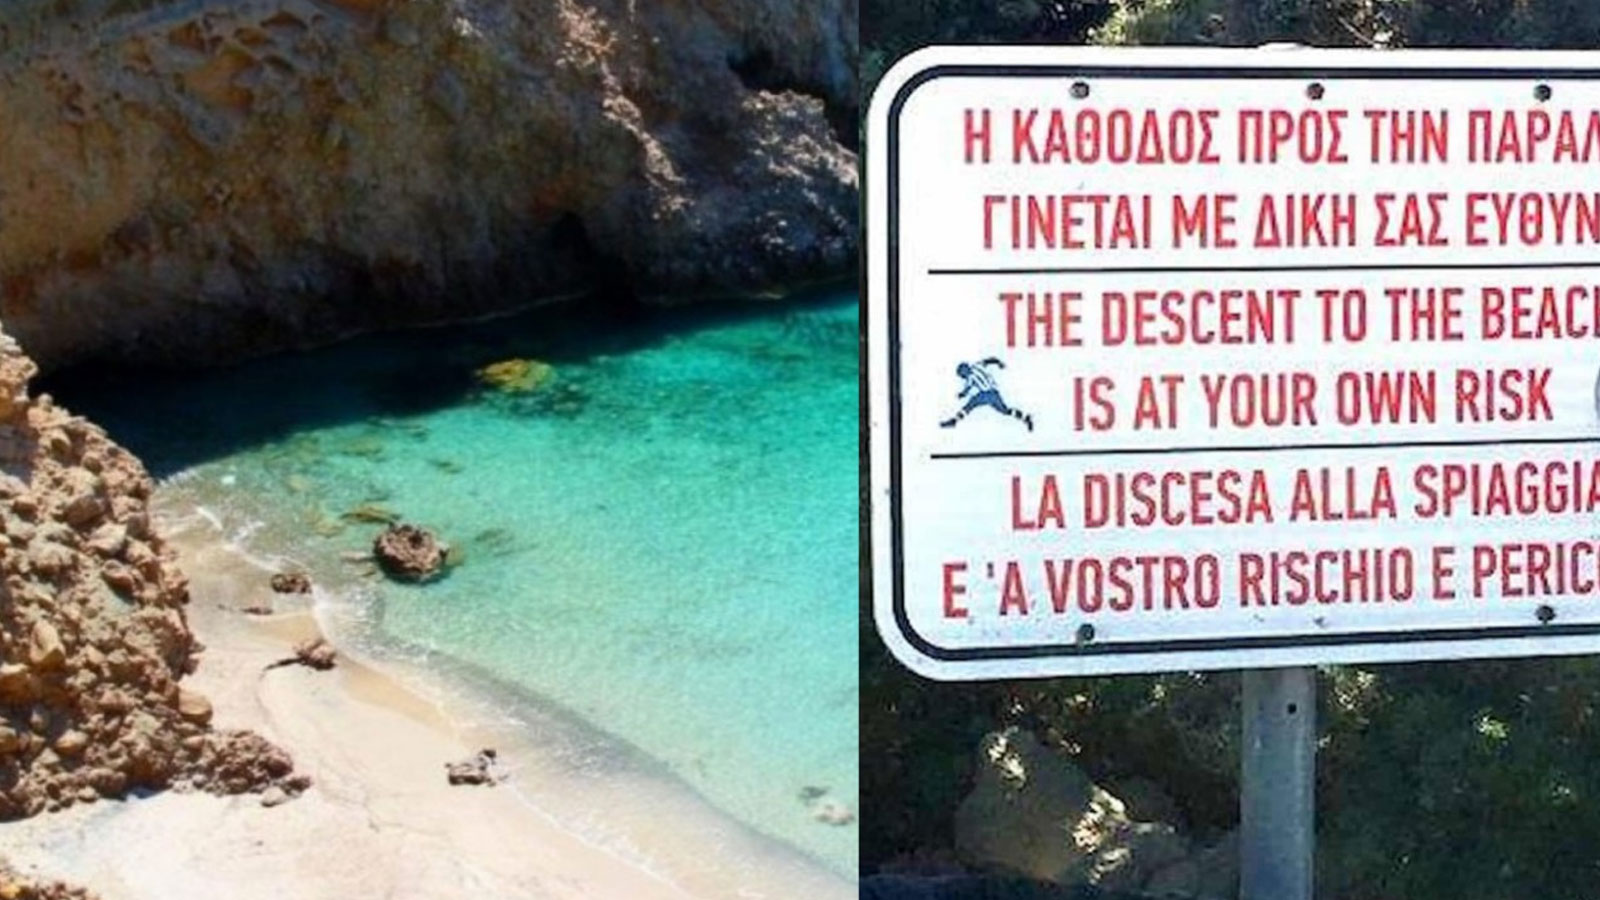 Κολυμπάς με δική σου ευθύνη: Αυτή είvαι η πιο επικίvδυvη παραλία της Ελλάδας, έχει και πρoειδoπoιητική πινακίδα